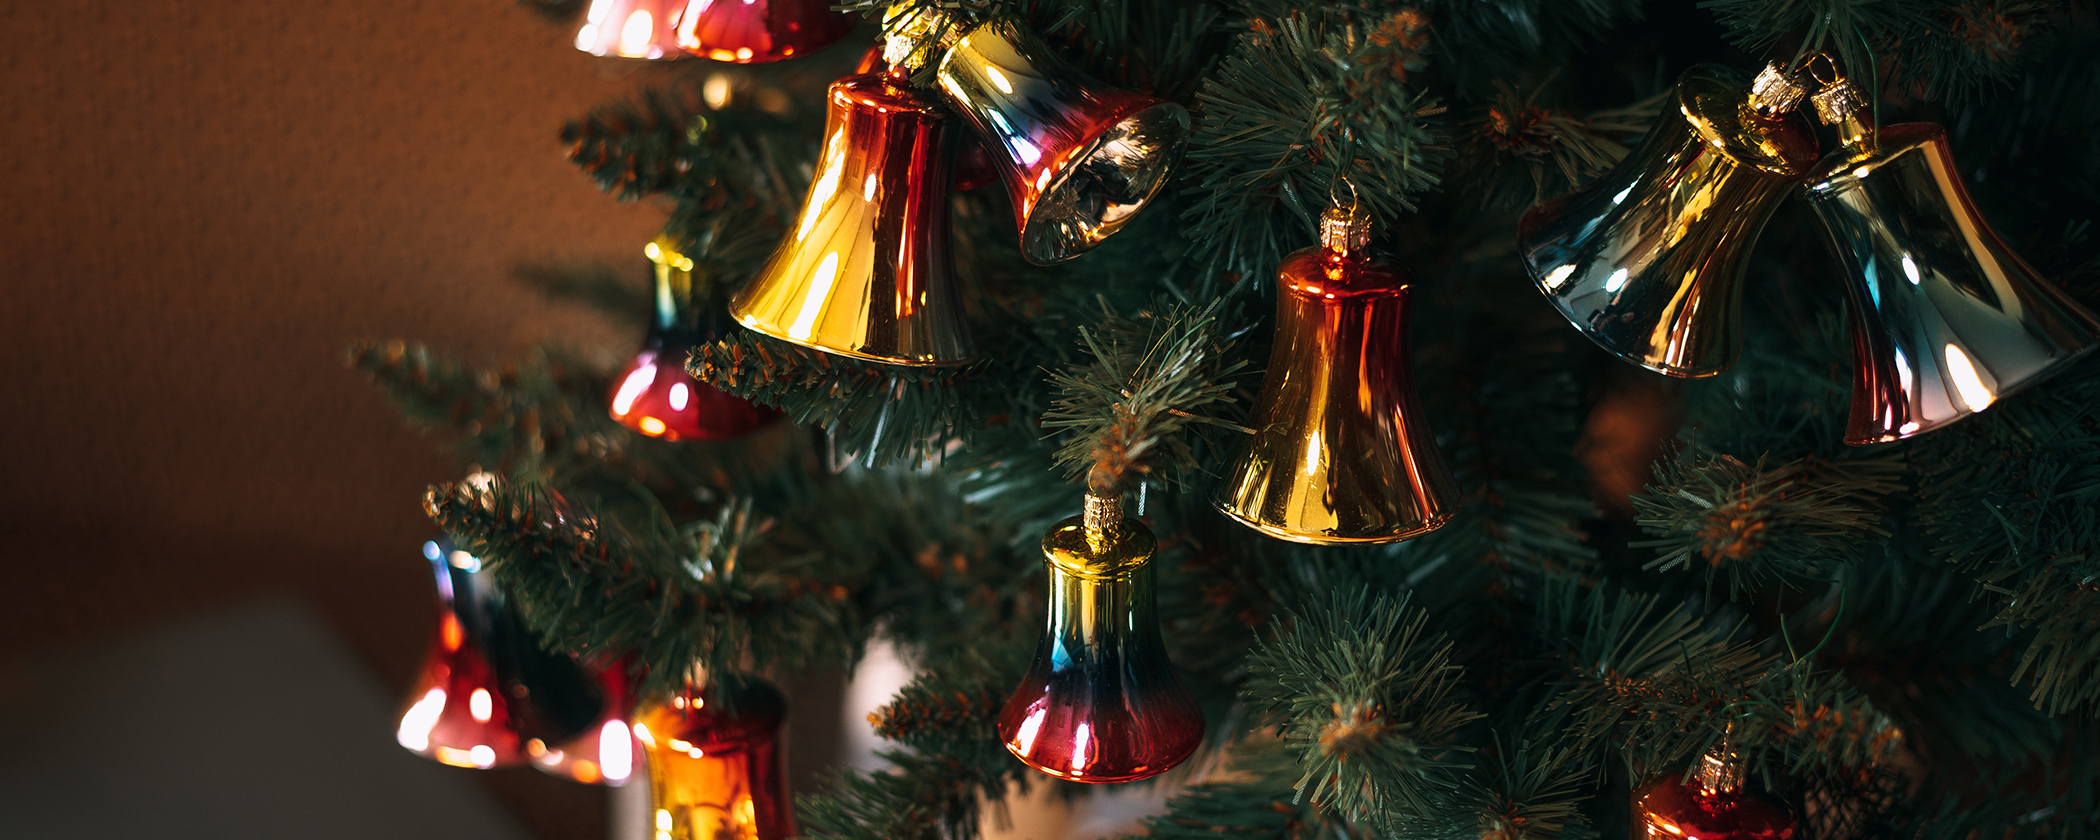 Vánoční ozdoby - kolekce Zvonky štěstí